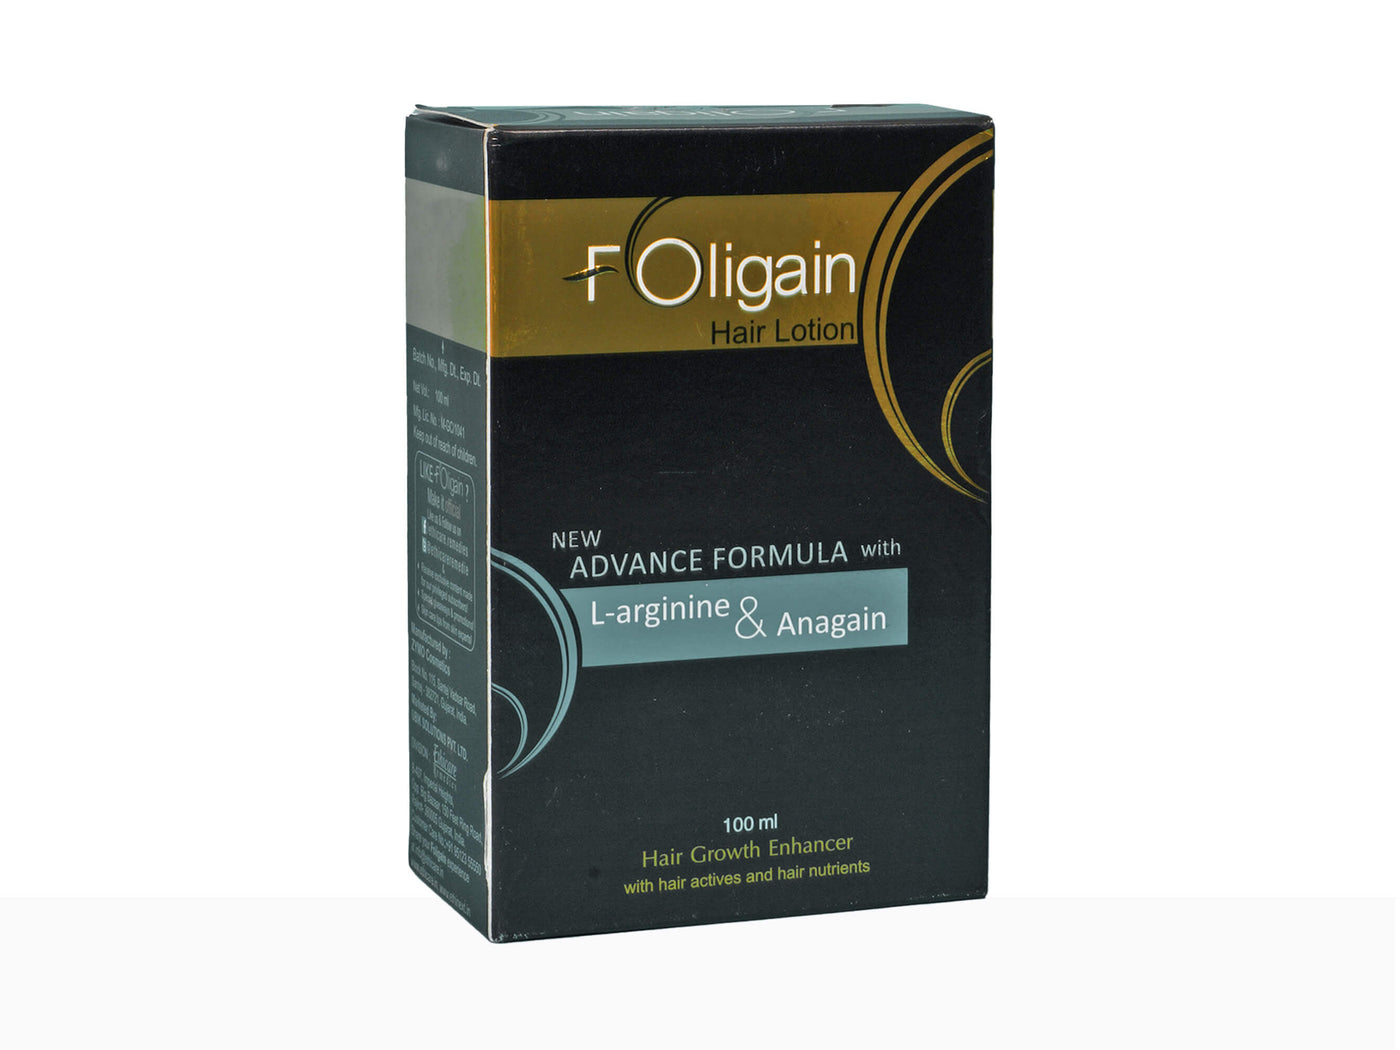 Foligain hair lotion - Clinikally